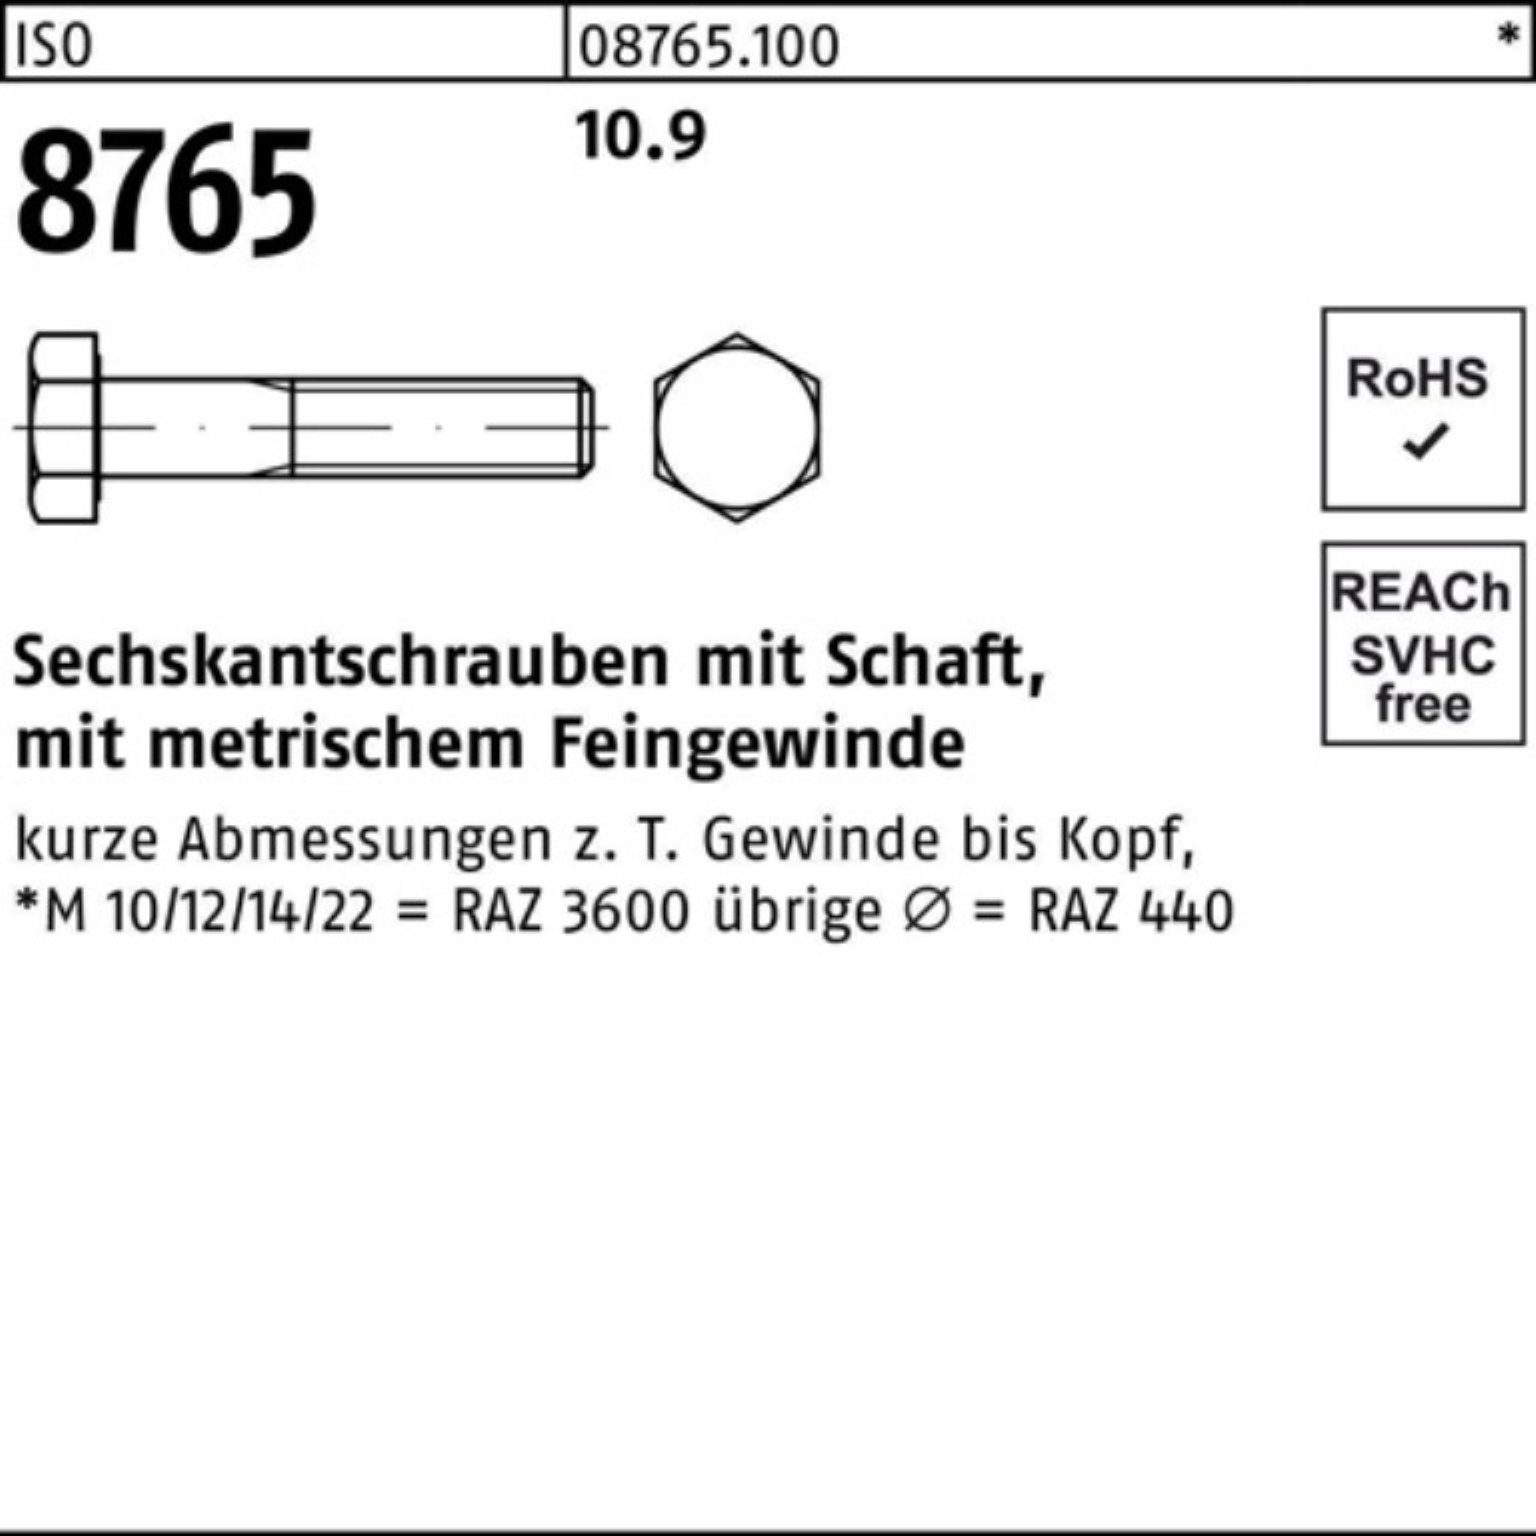 Pack 90 Reyher ISO Sechskantschraube 8765 100er 10.9 Stüc Sechskantschraube M24x1,5x Schaft 10